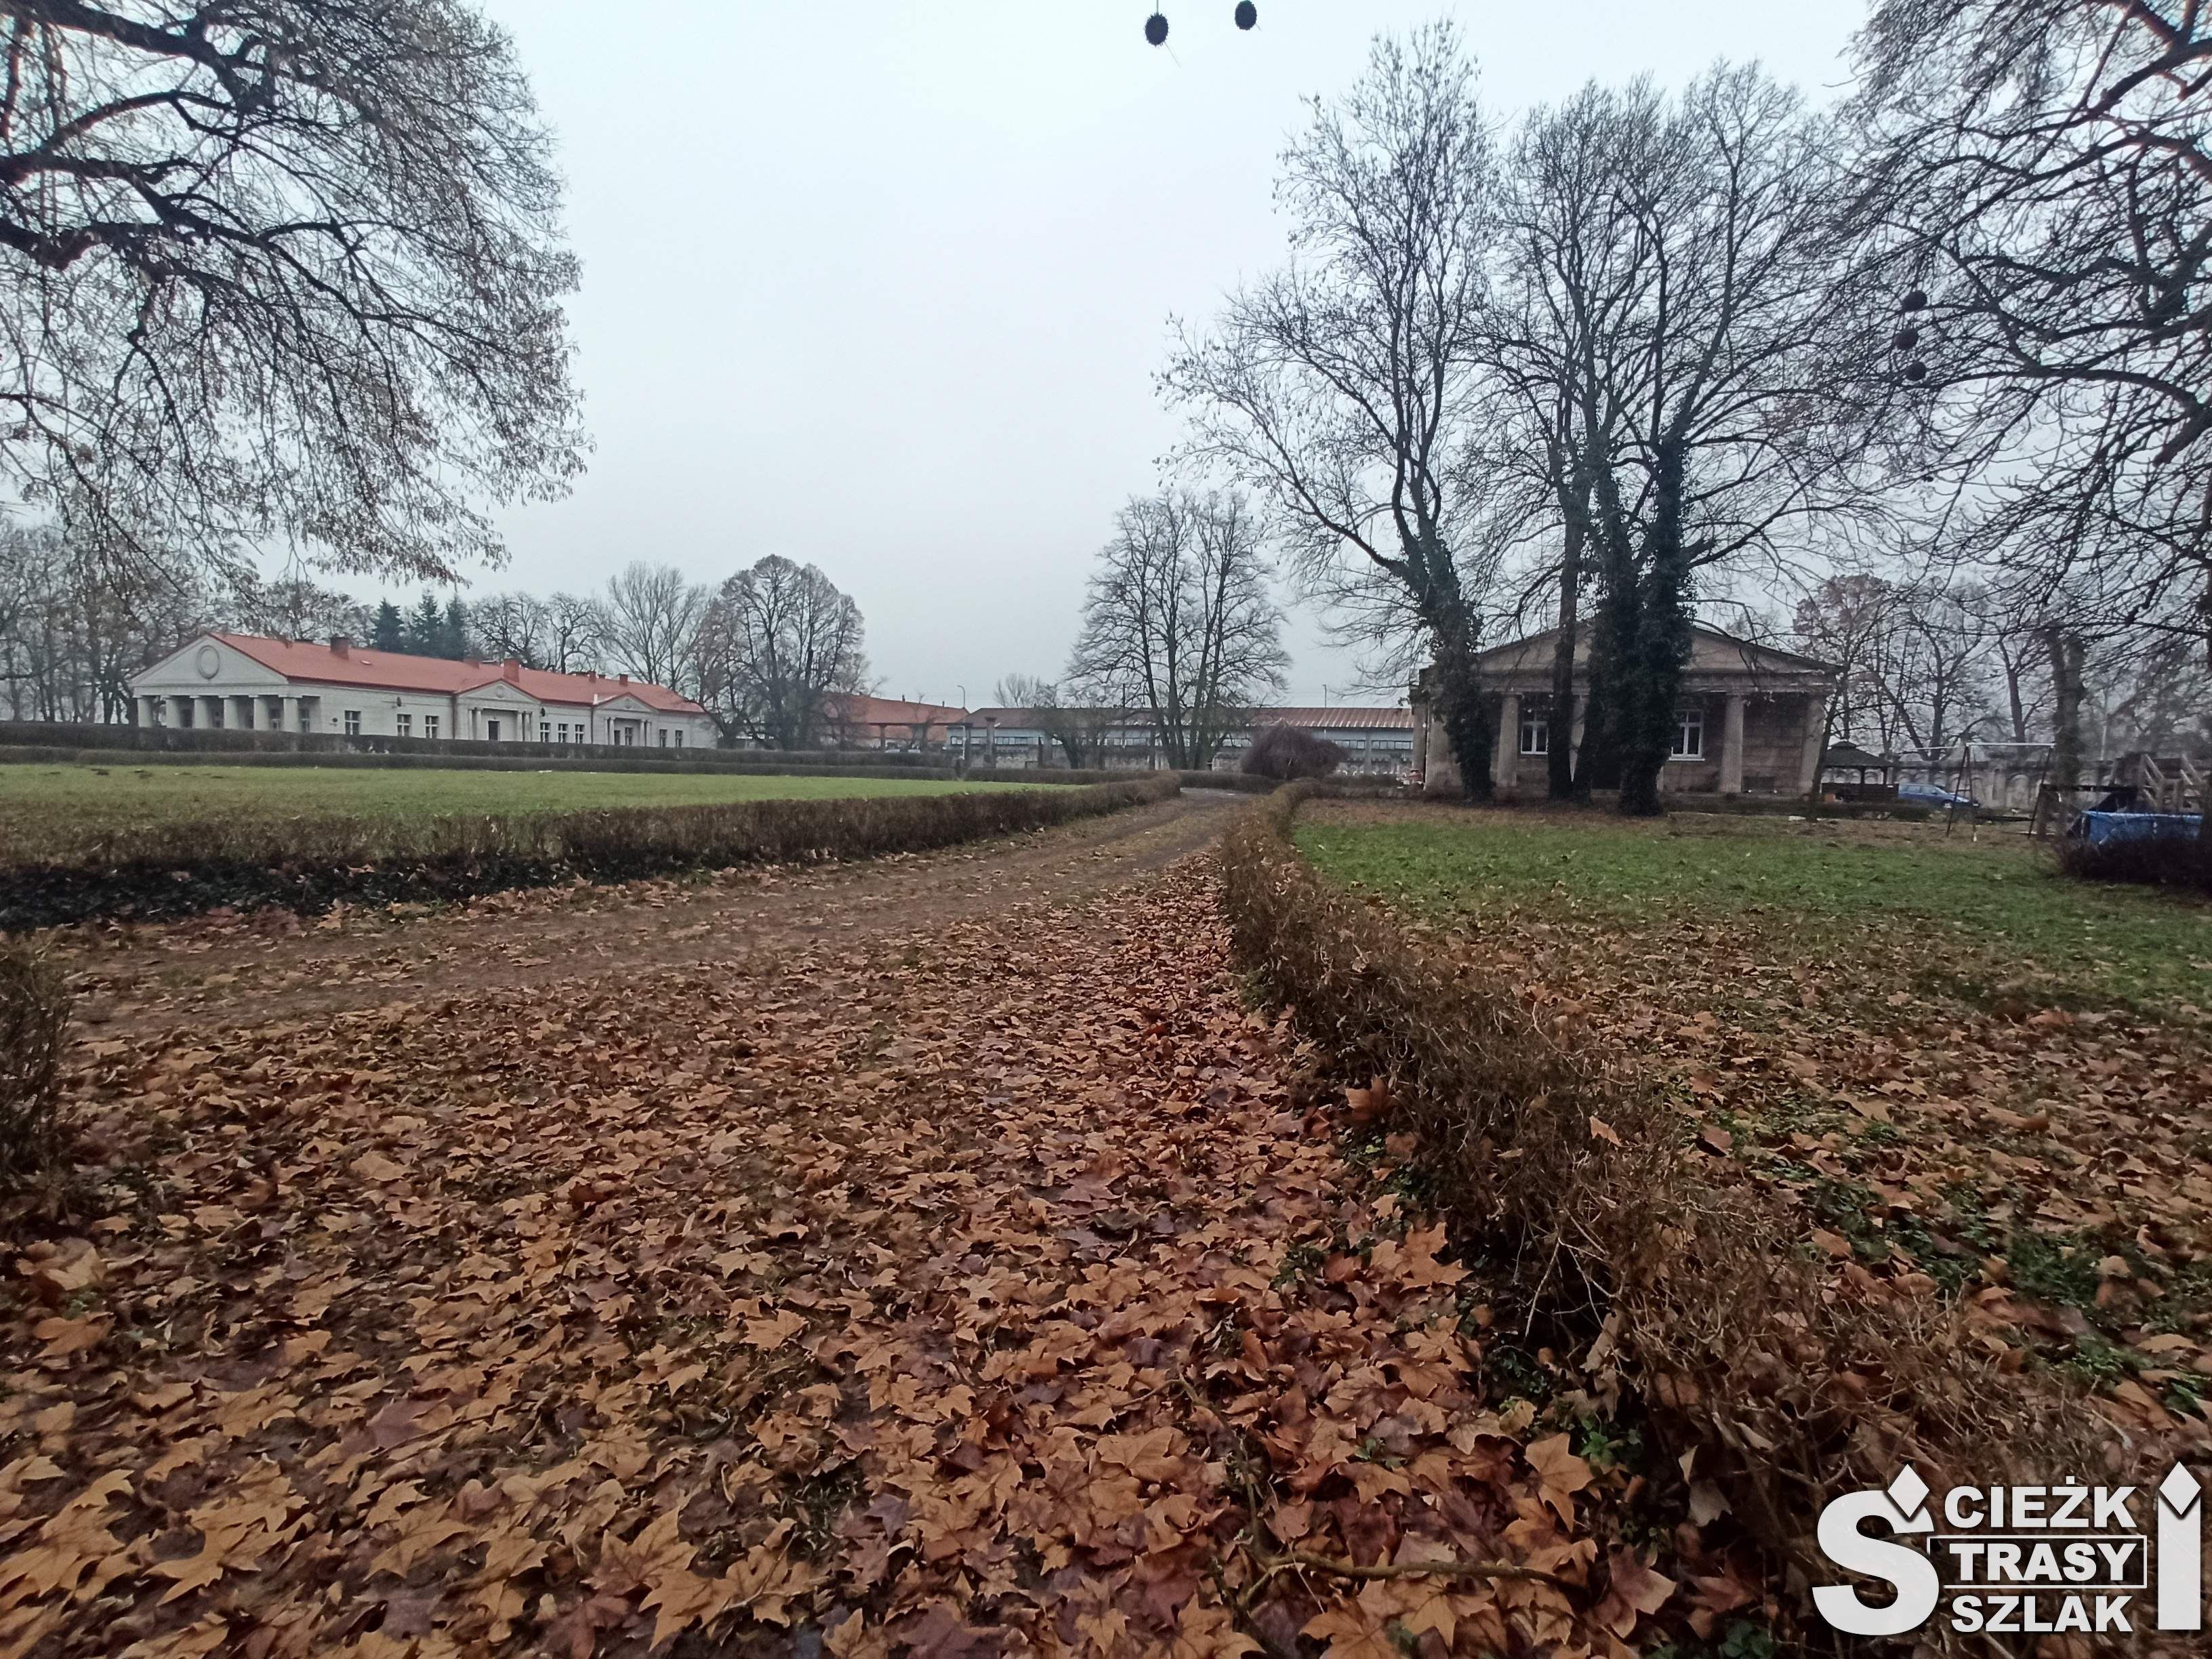 Szeroka ścieżka przysypaną liśćmi od pałacu Kumatowskich w stronę stajni i ujeżdżalni